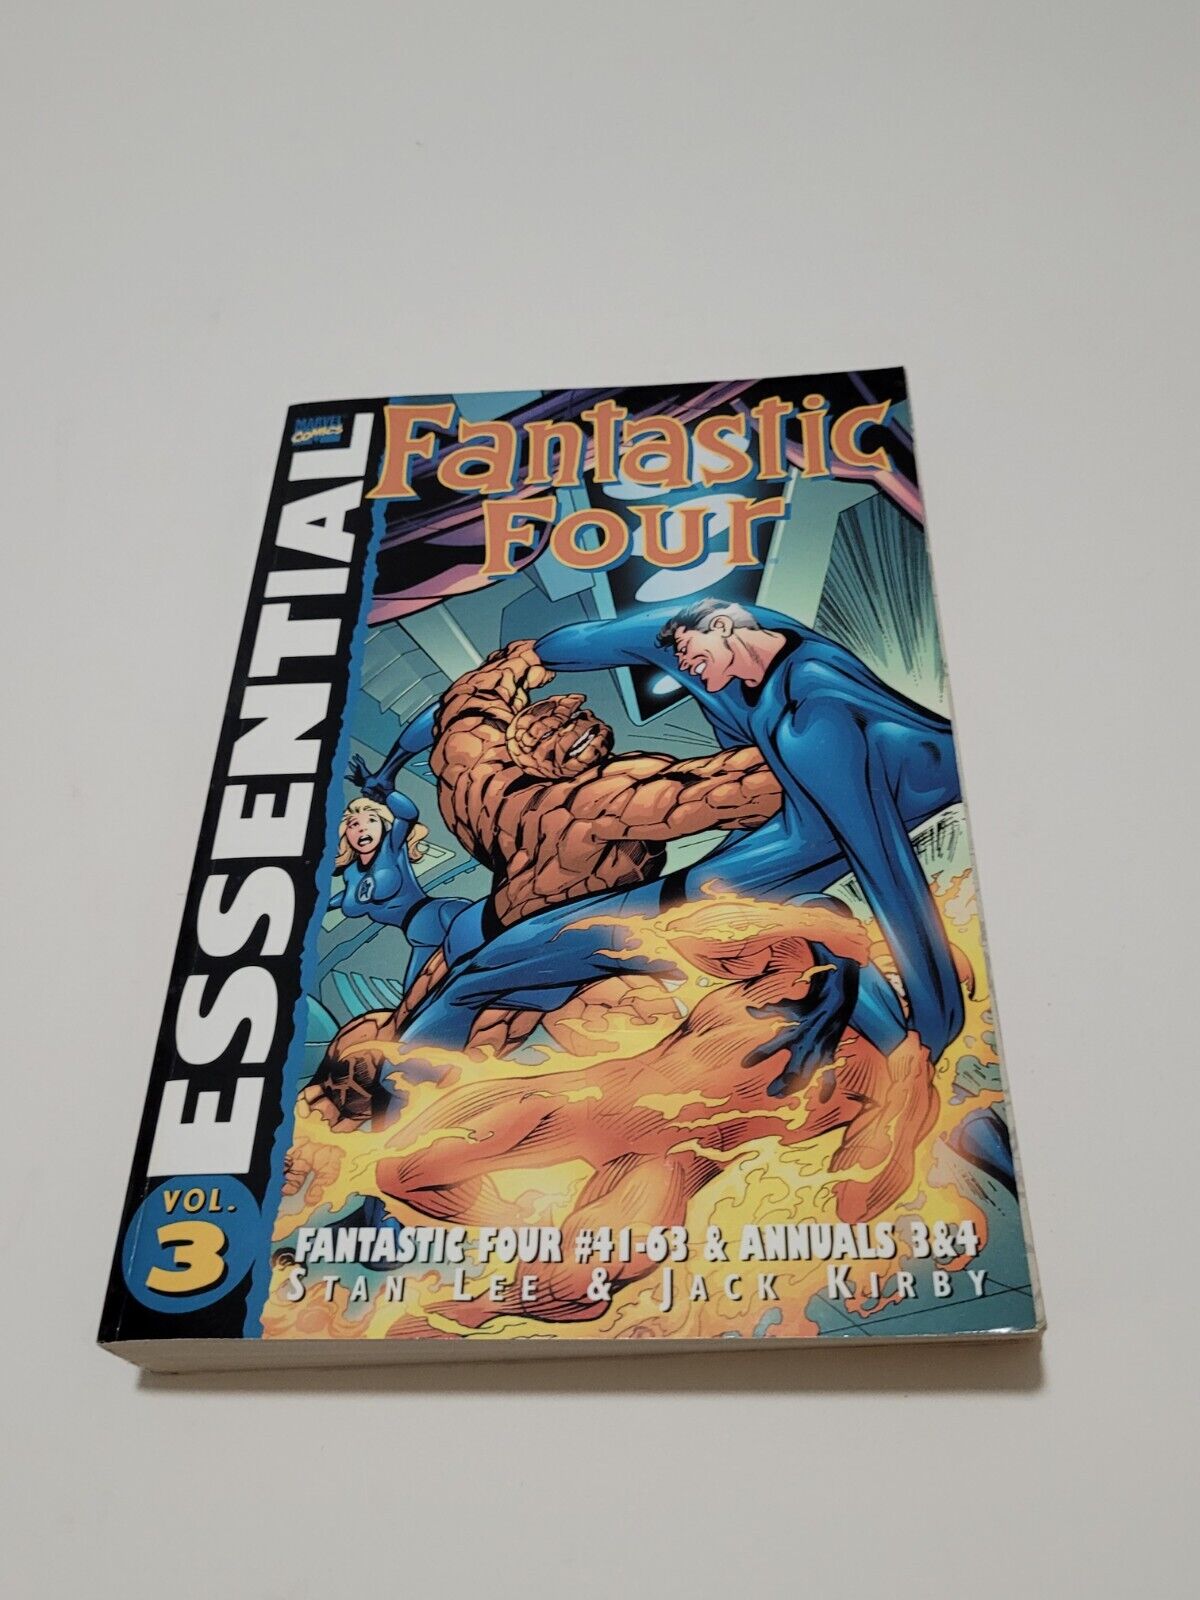 Essential Fantastic Four Volume 3 #41-63 & Annuals 3 & 4 SC 2001 Omnibus VG